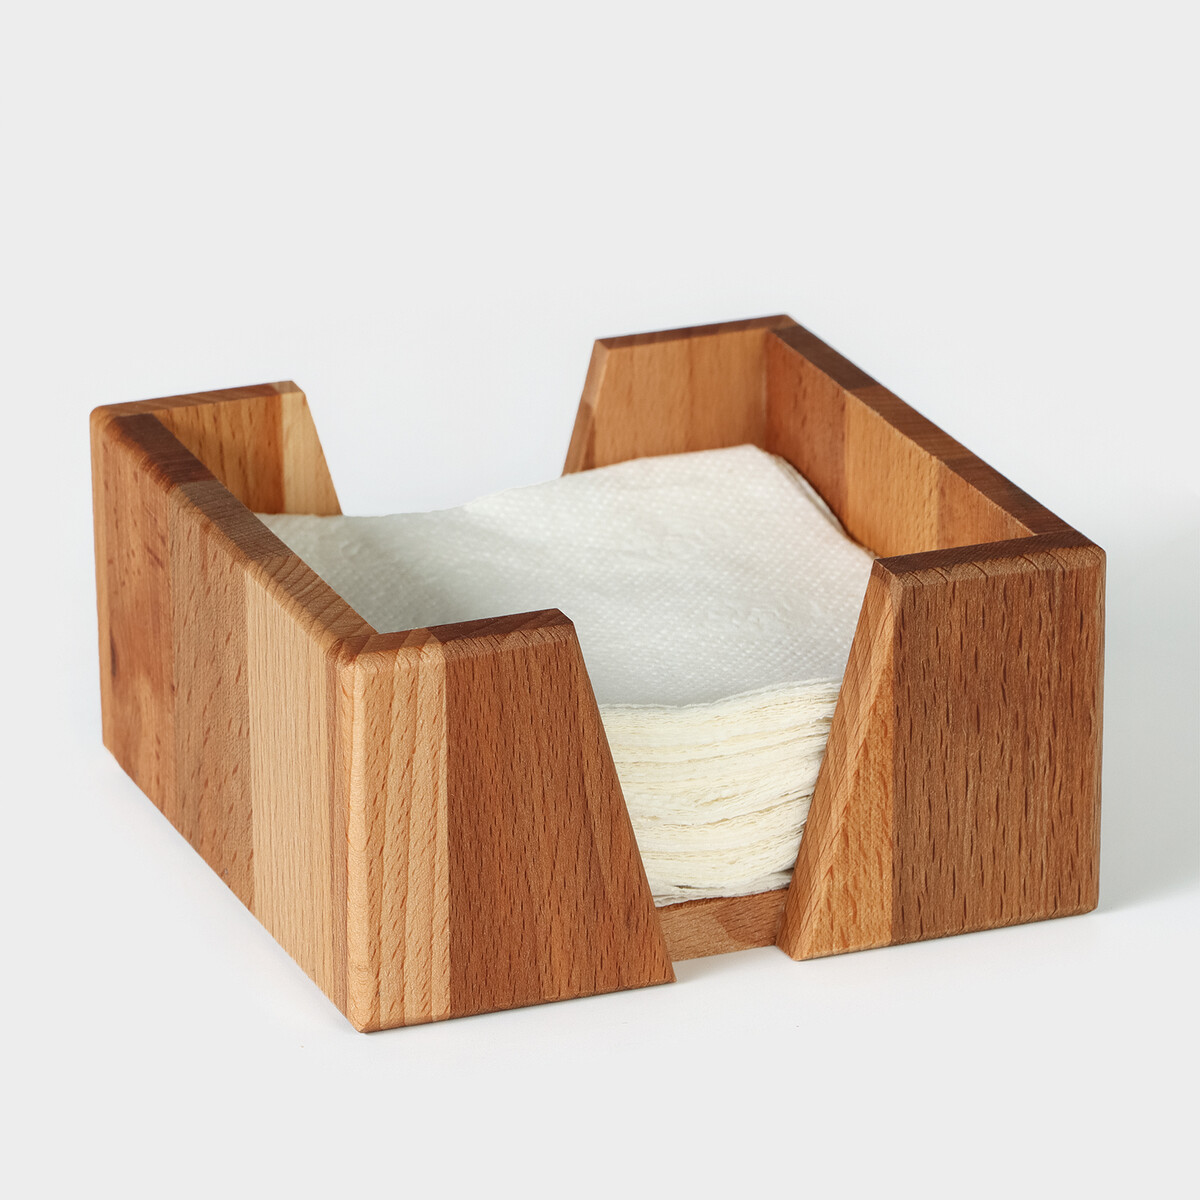 Салфетница деревянная adelica, 14×14×7 см, бук салфетница деревянная без покрытия 24×11×7 см